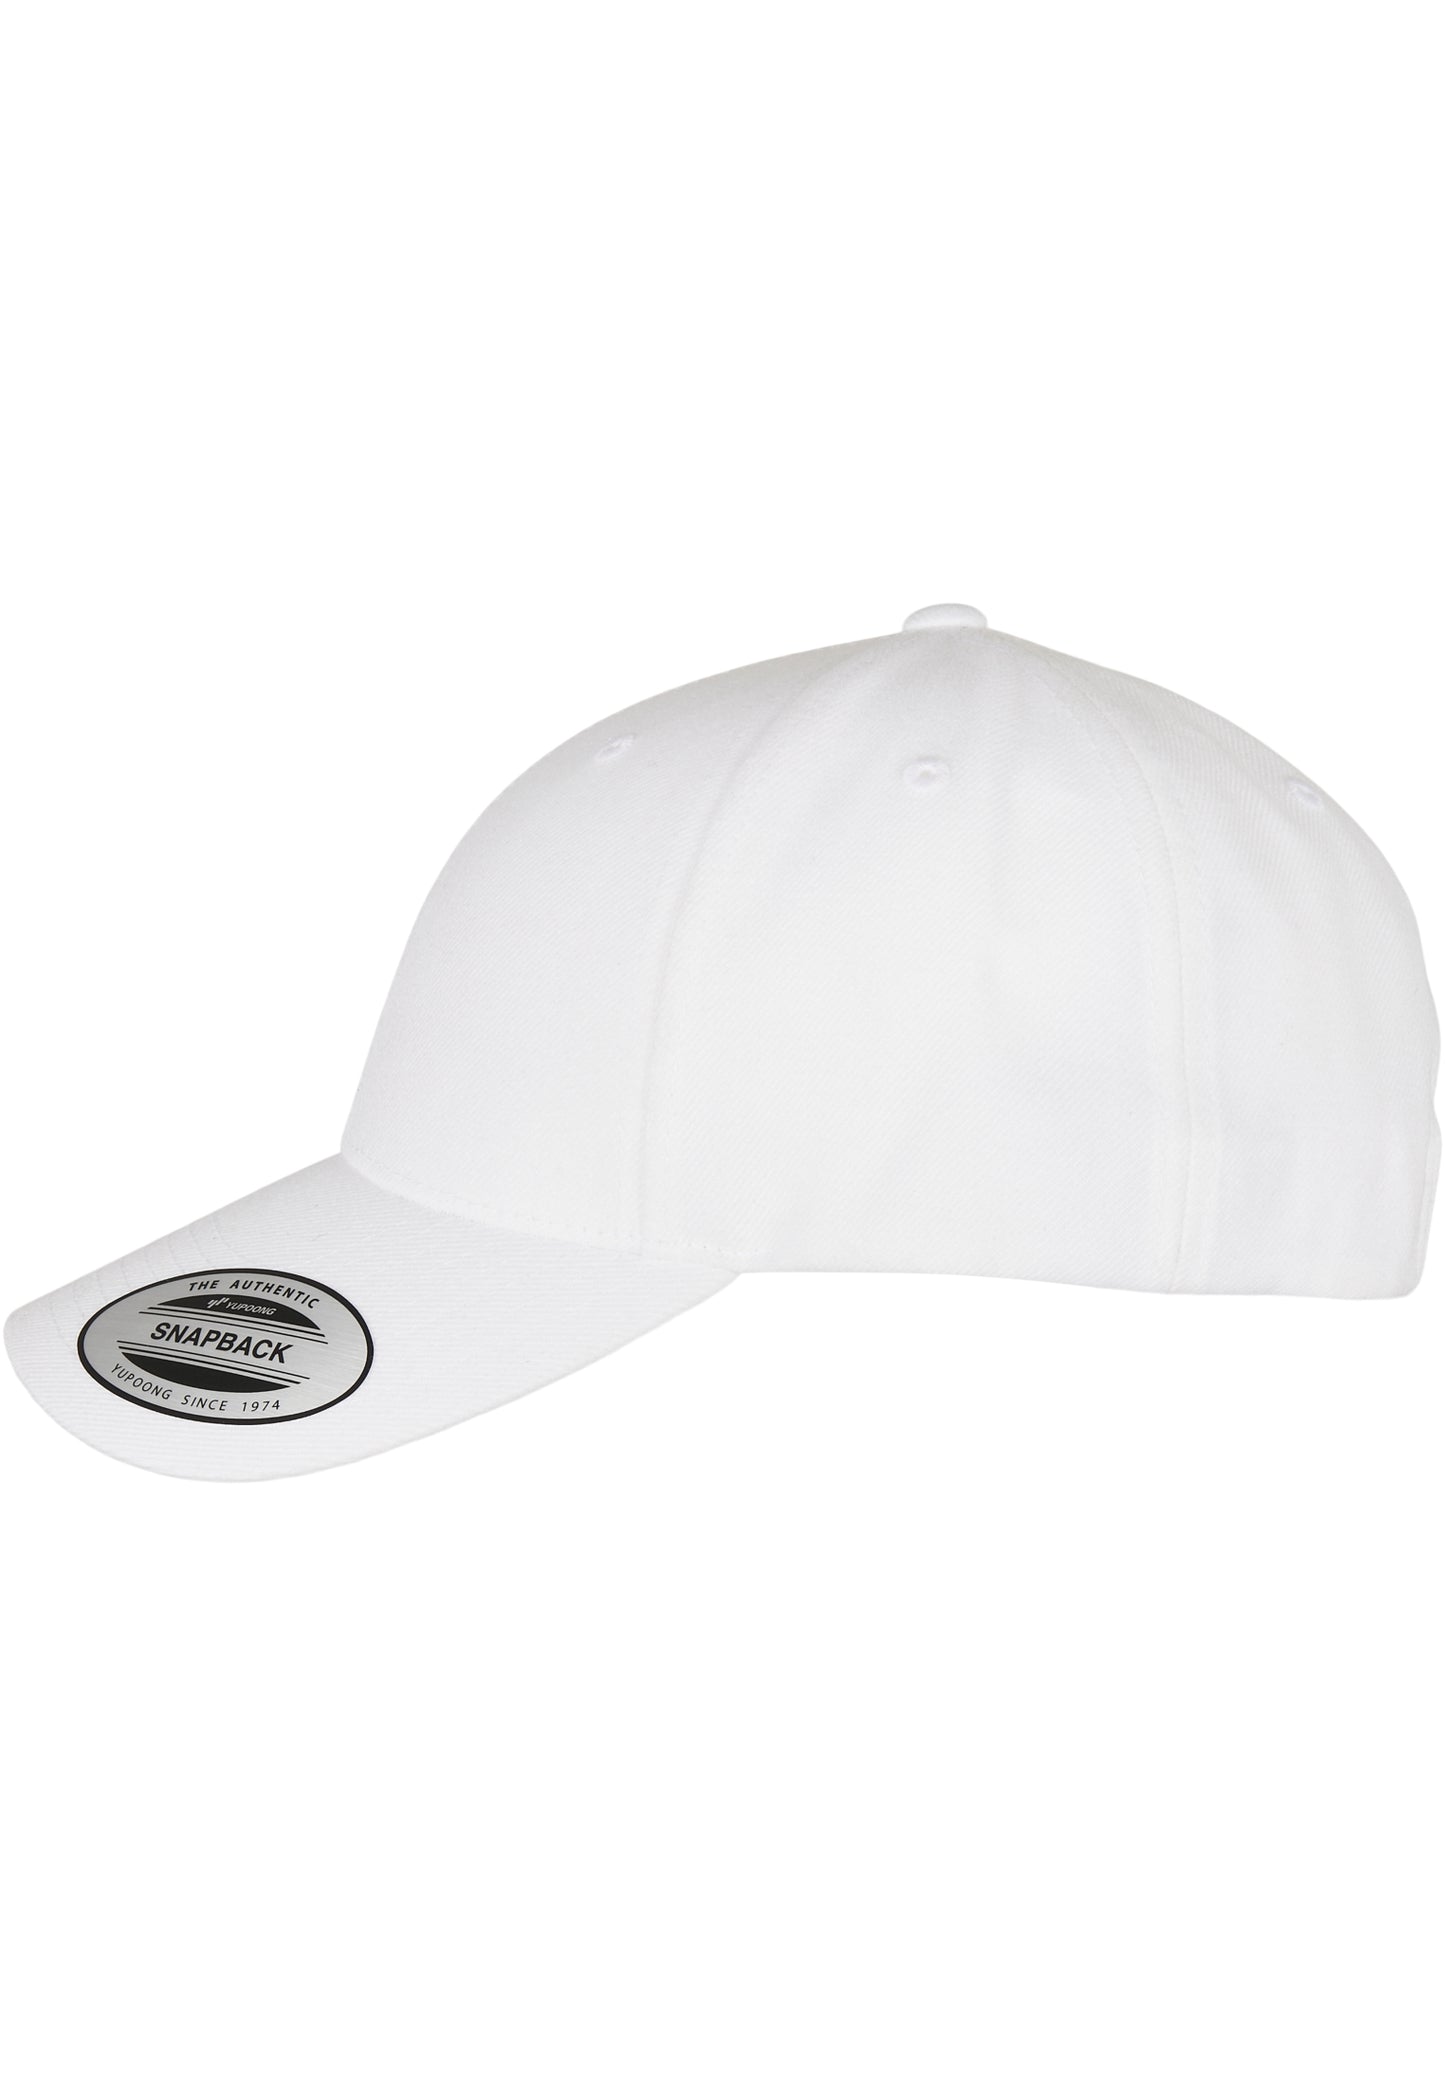 Premium Curved Visor Snapback Cap